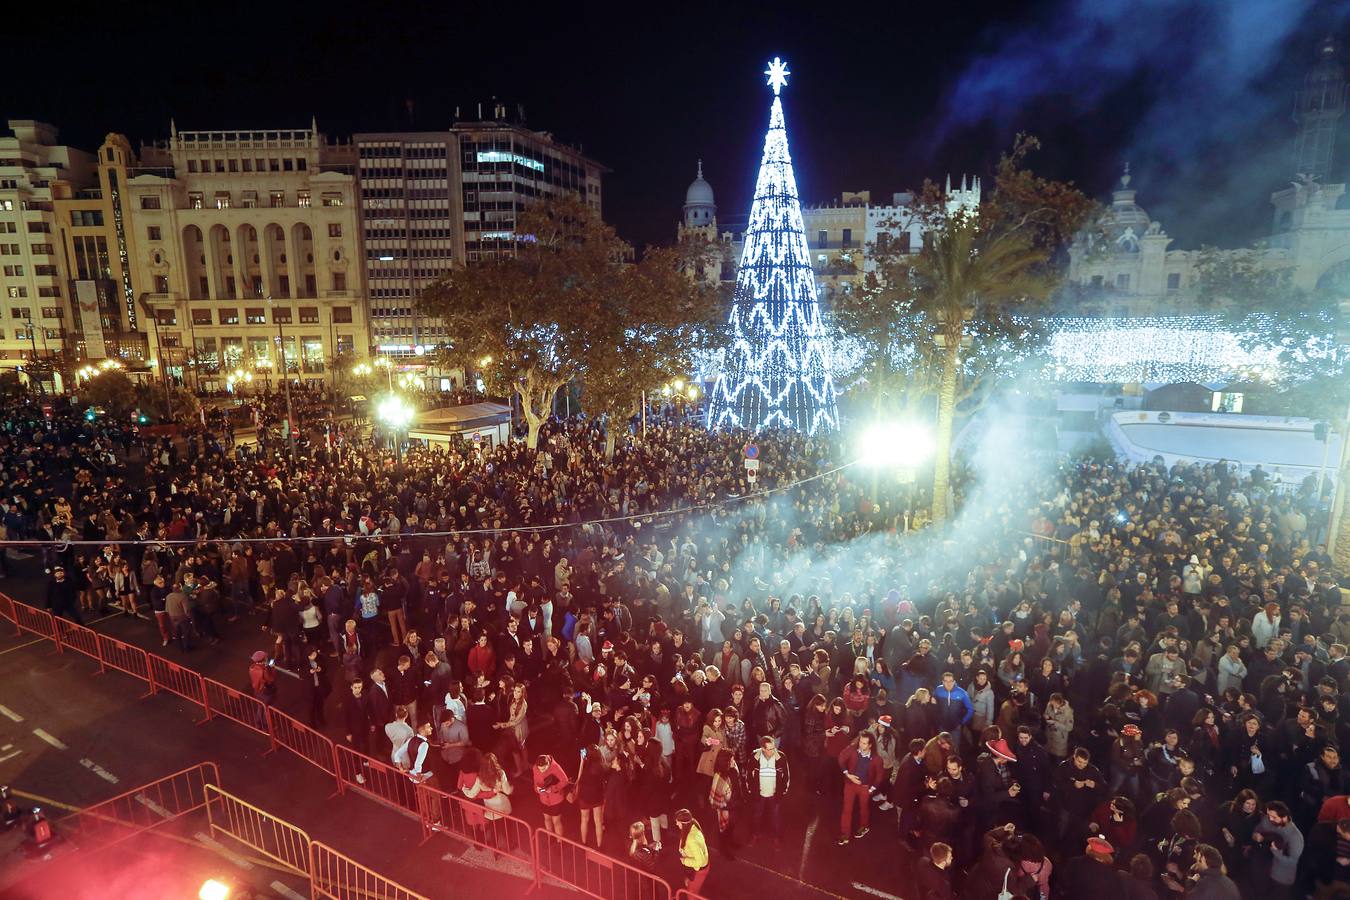 El Ayuntamiento de Valencia podrá usar pirotecnia en la fiesta de Nochevieja